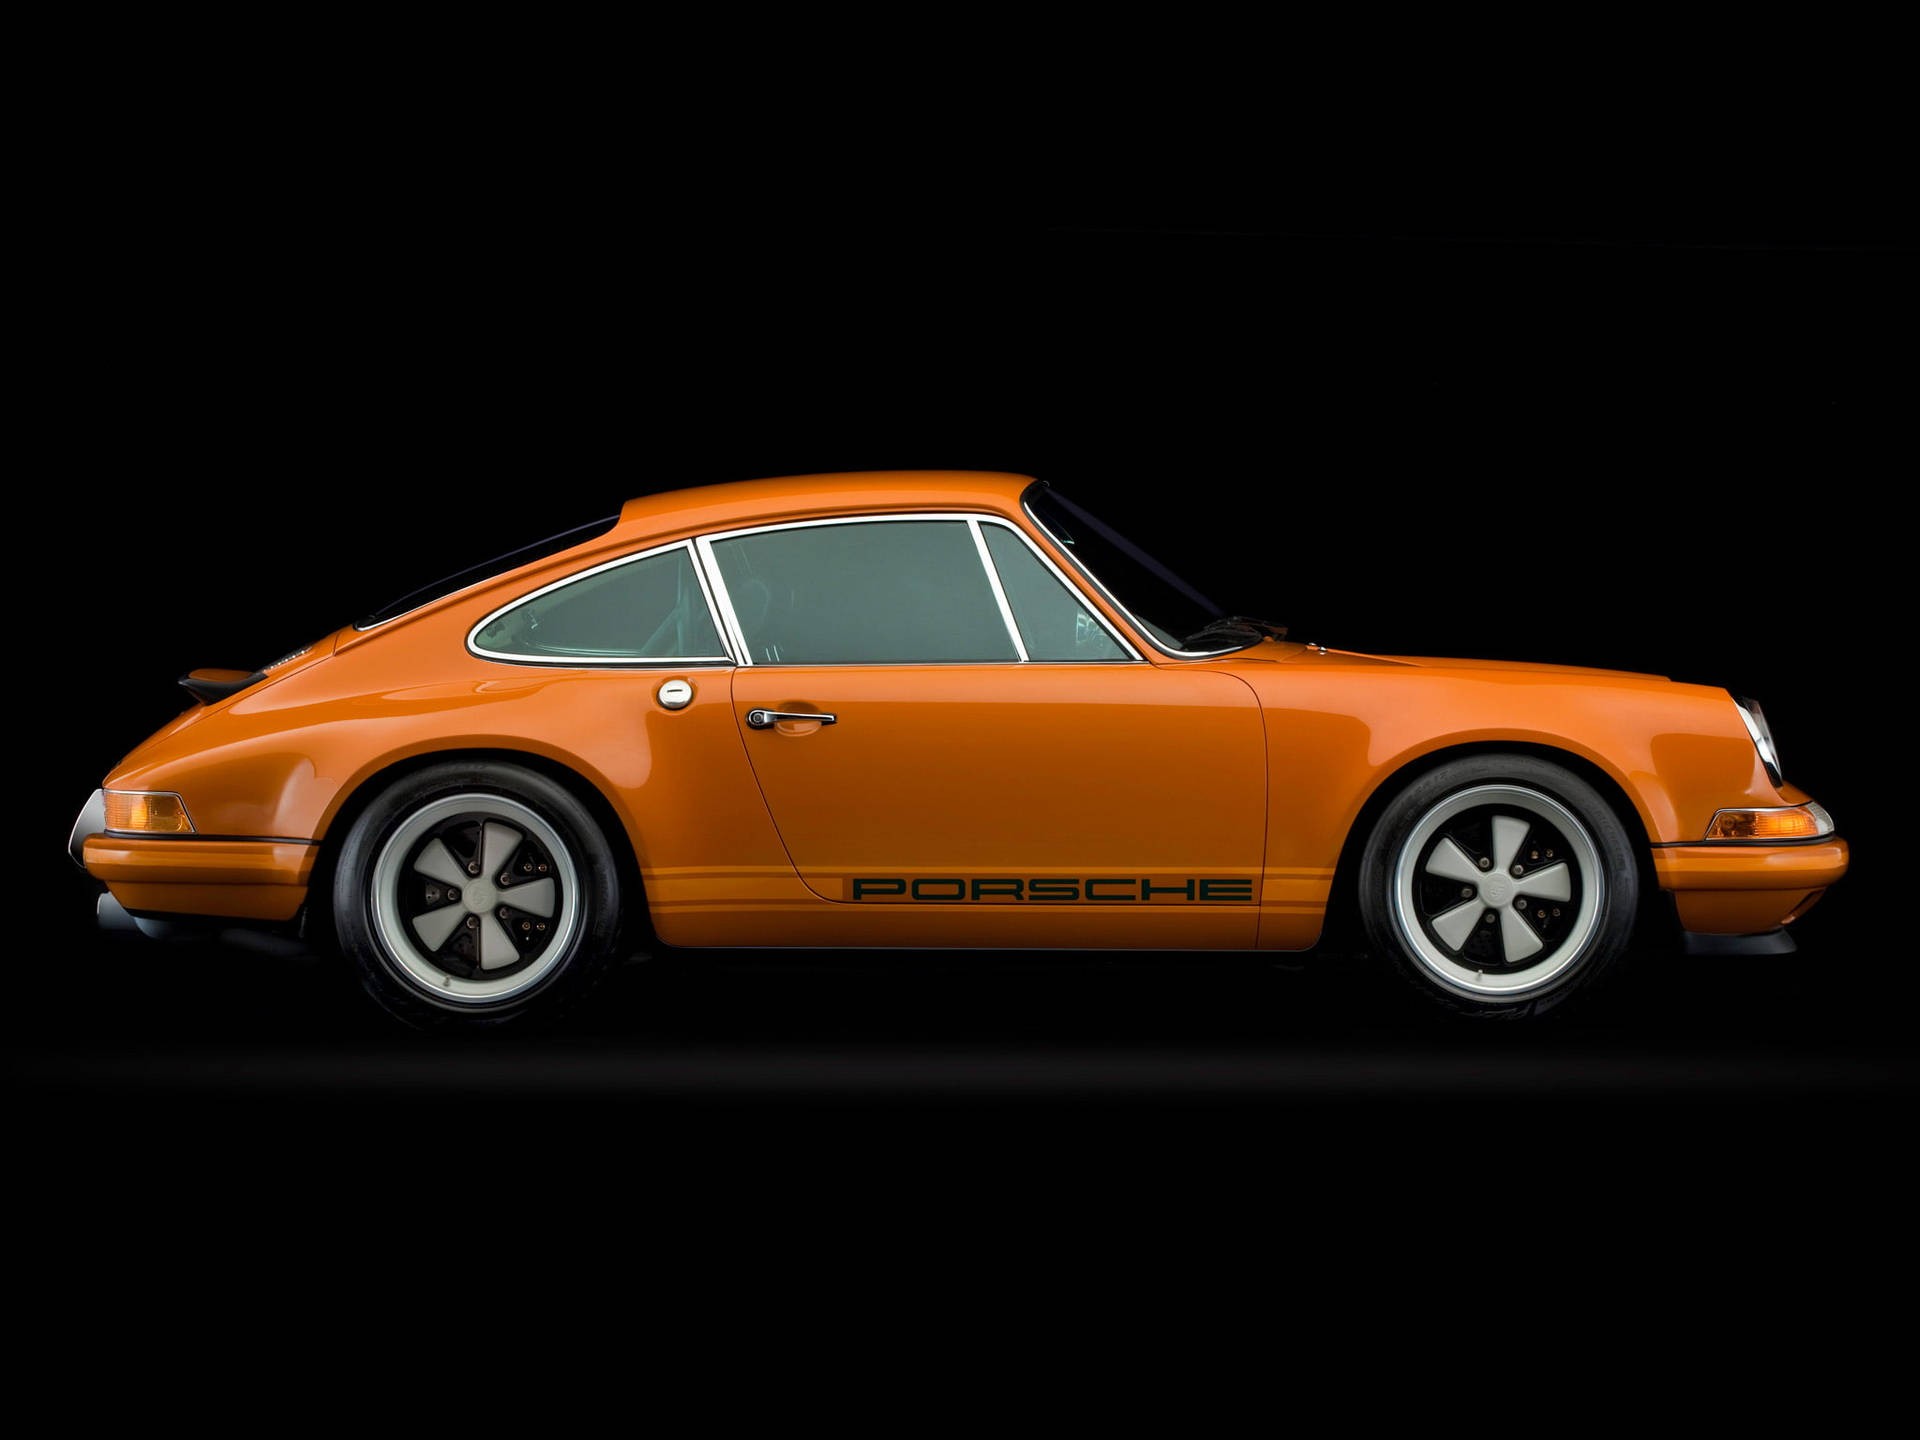 Orange Singer Porsche 912 Wallpaper